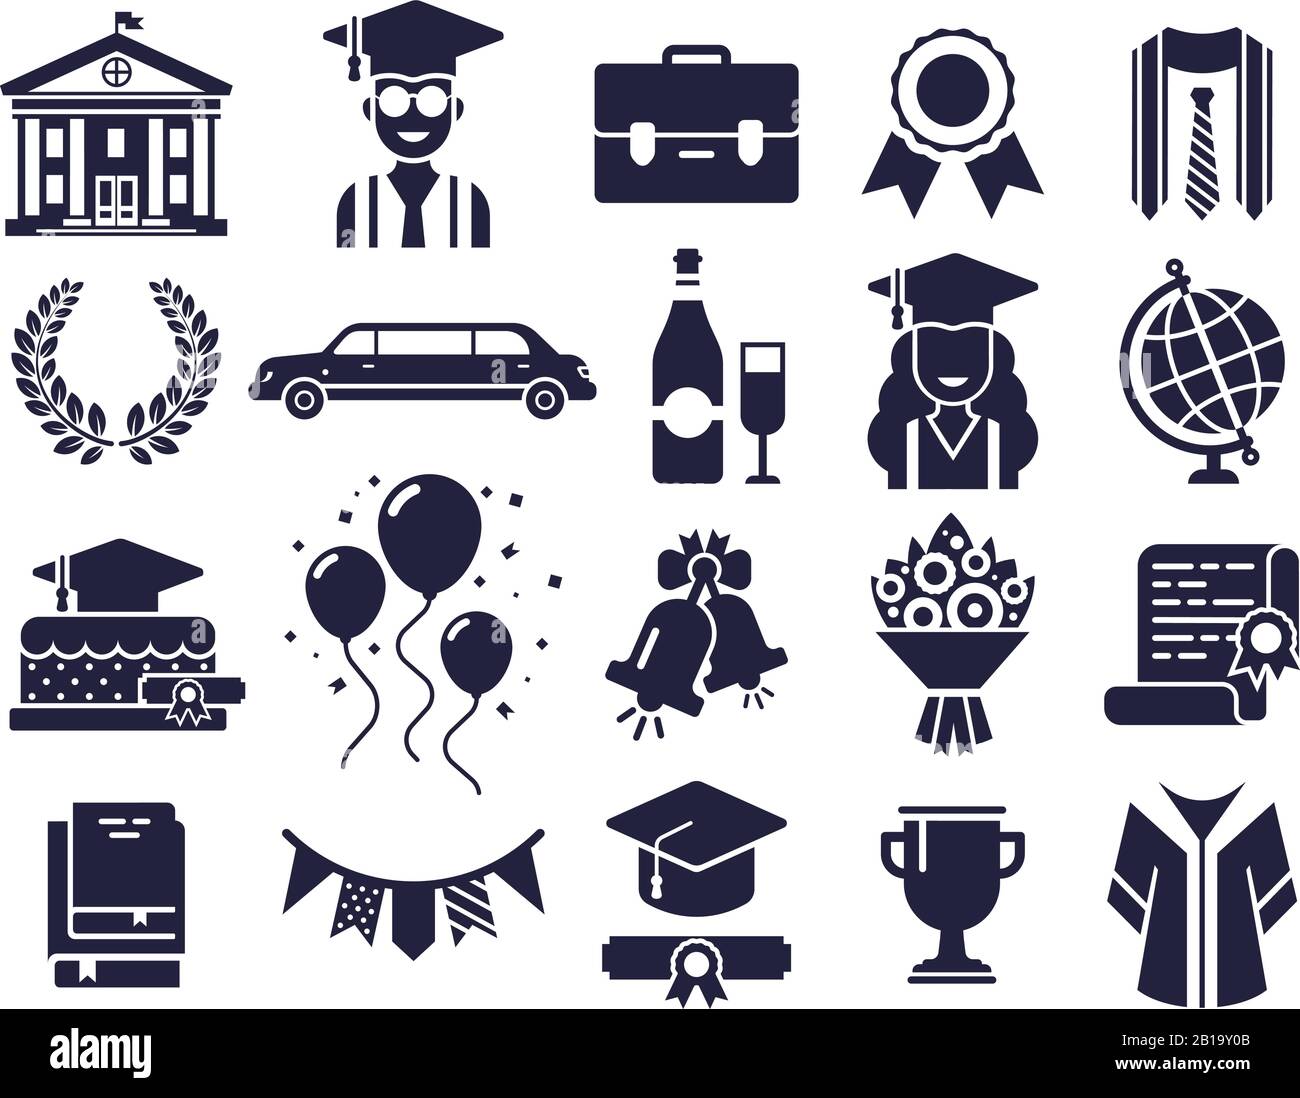 Symbole für College-Silhouetten. Graduiertenstag, Abschlusskappe und Diplomaten-Piktogramm Silhouetten-Symbol-Vektorsatz Stock Vektor